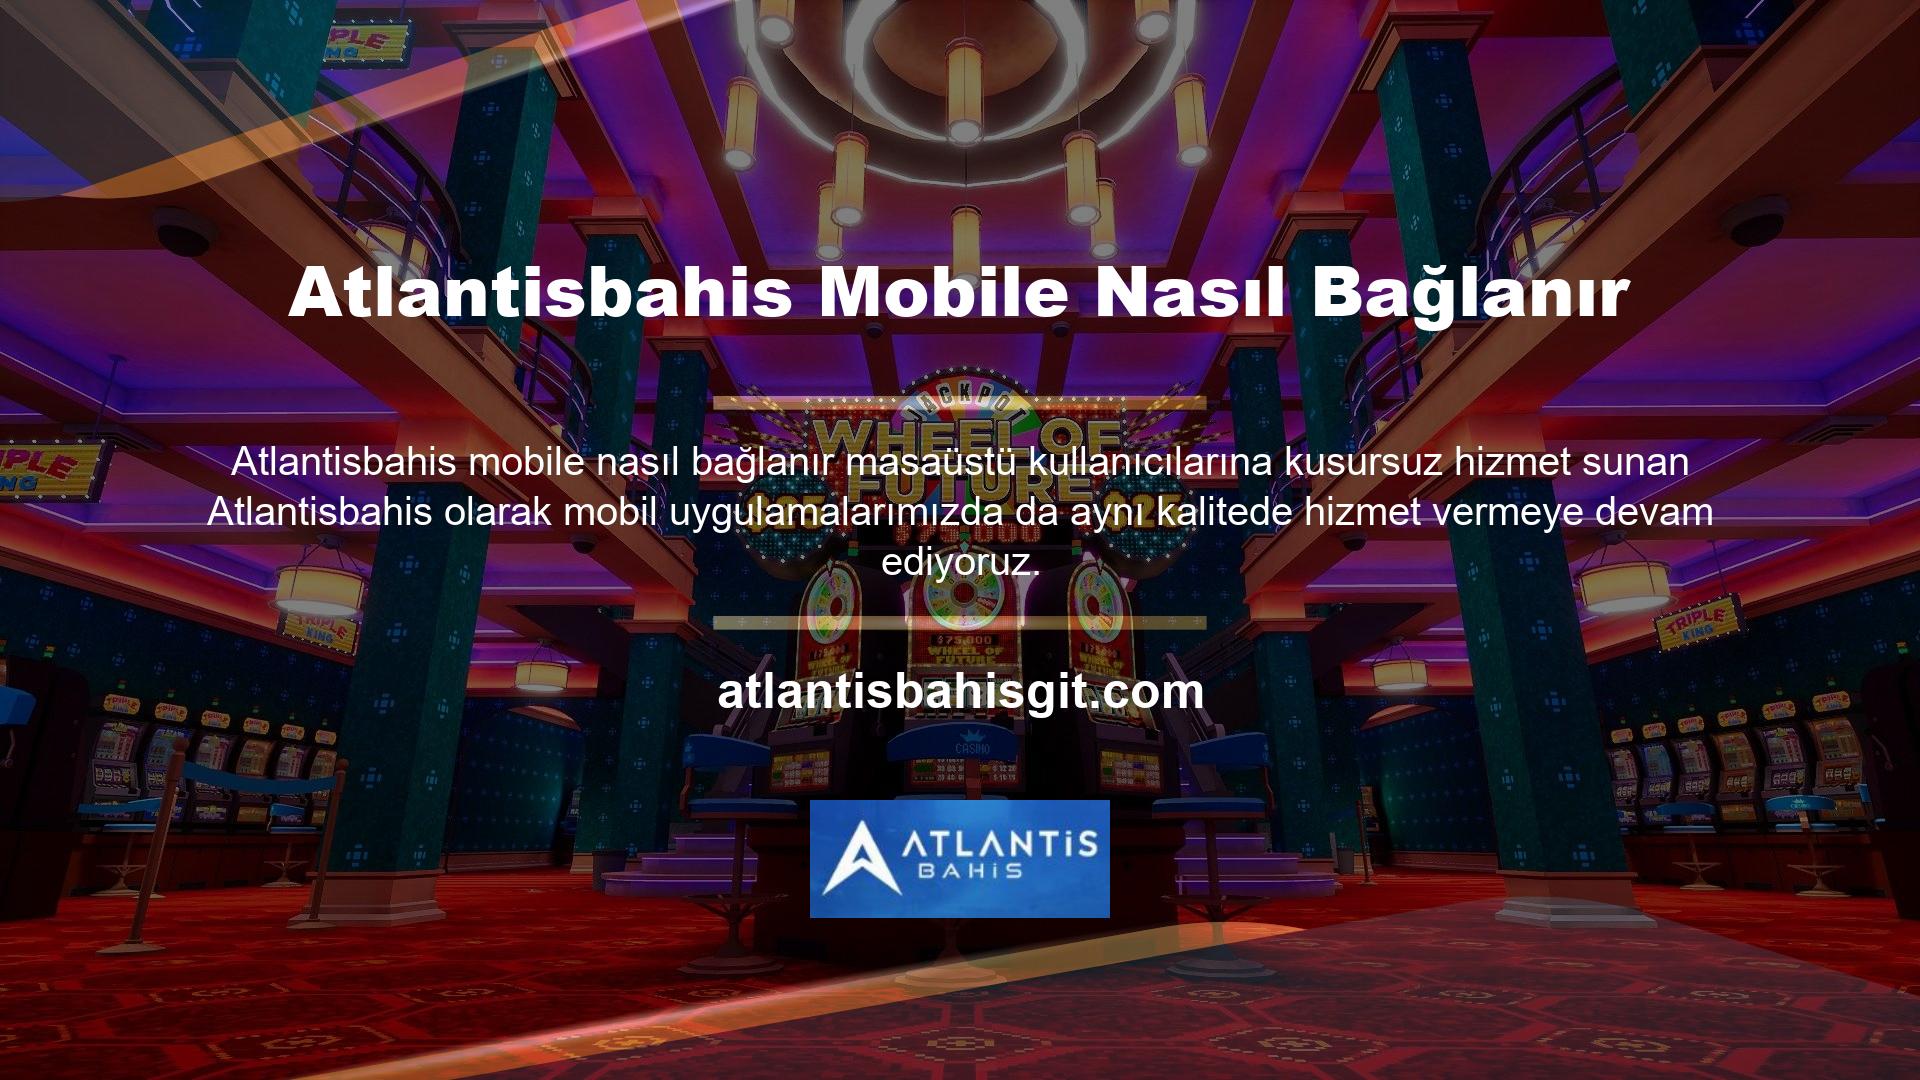 Mevcut Atlantisbahis giriş adresinizden doğrudan cep telefonunuzdan giriş yapabilirsiniz